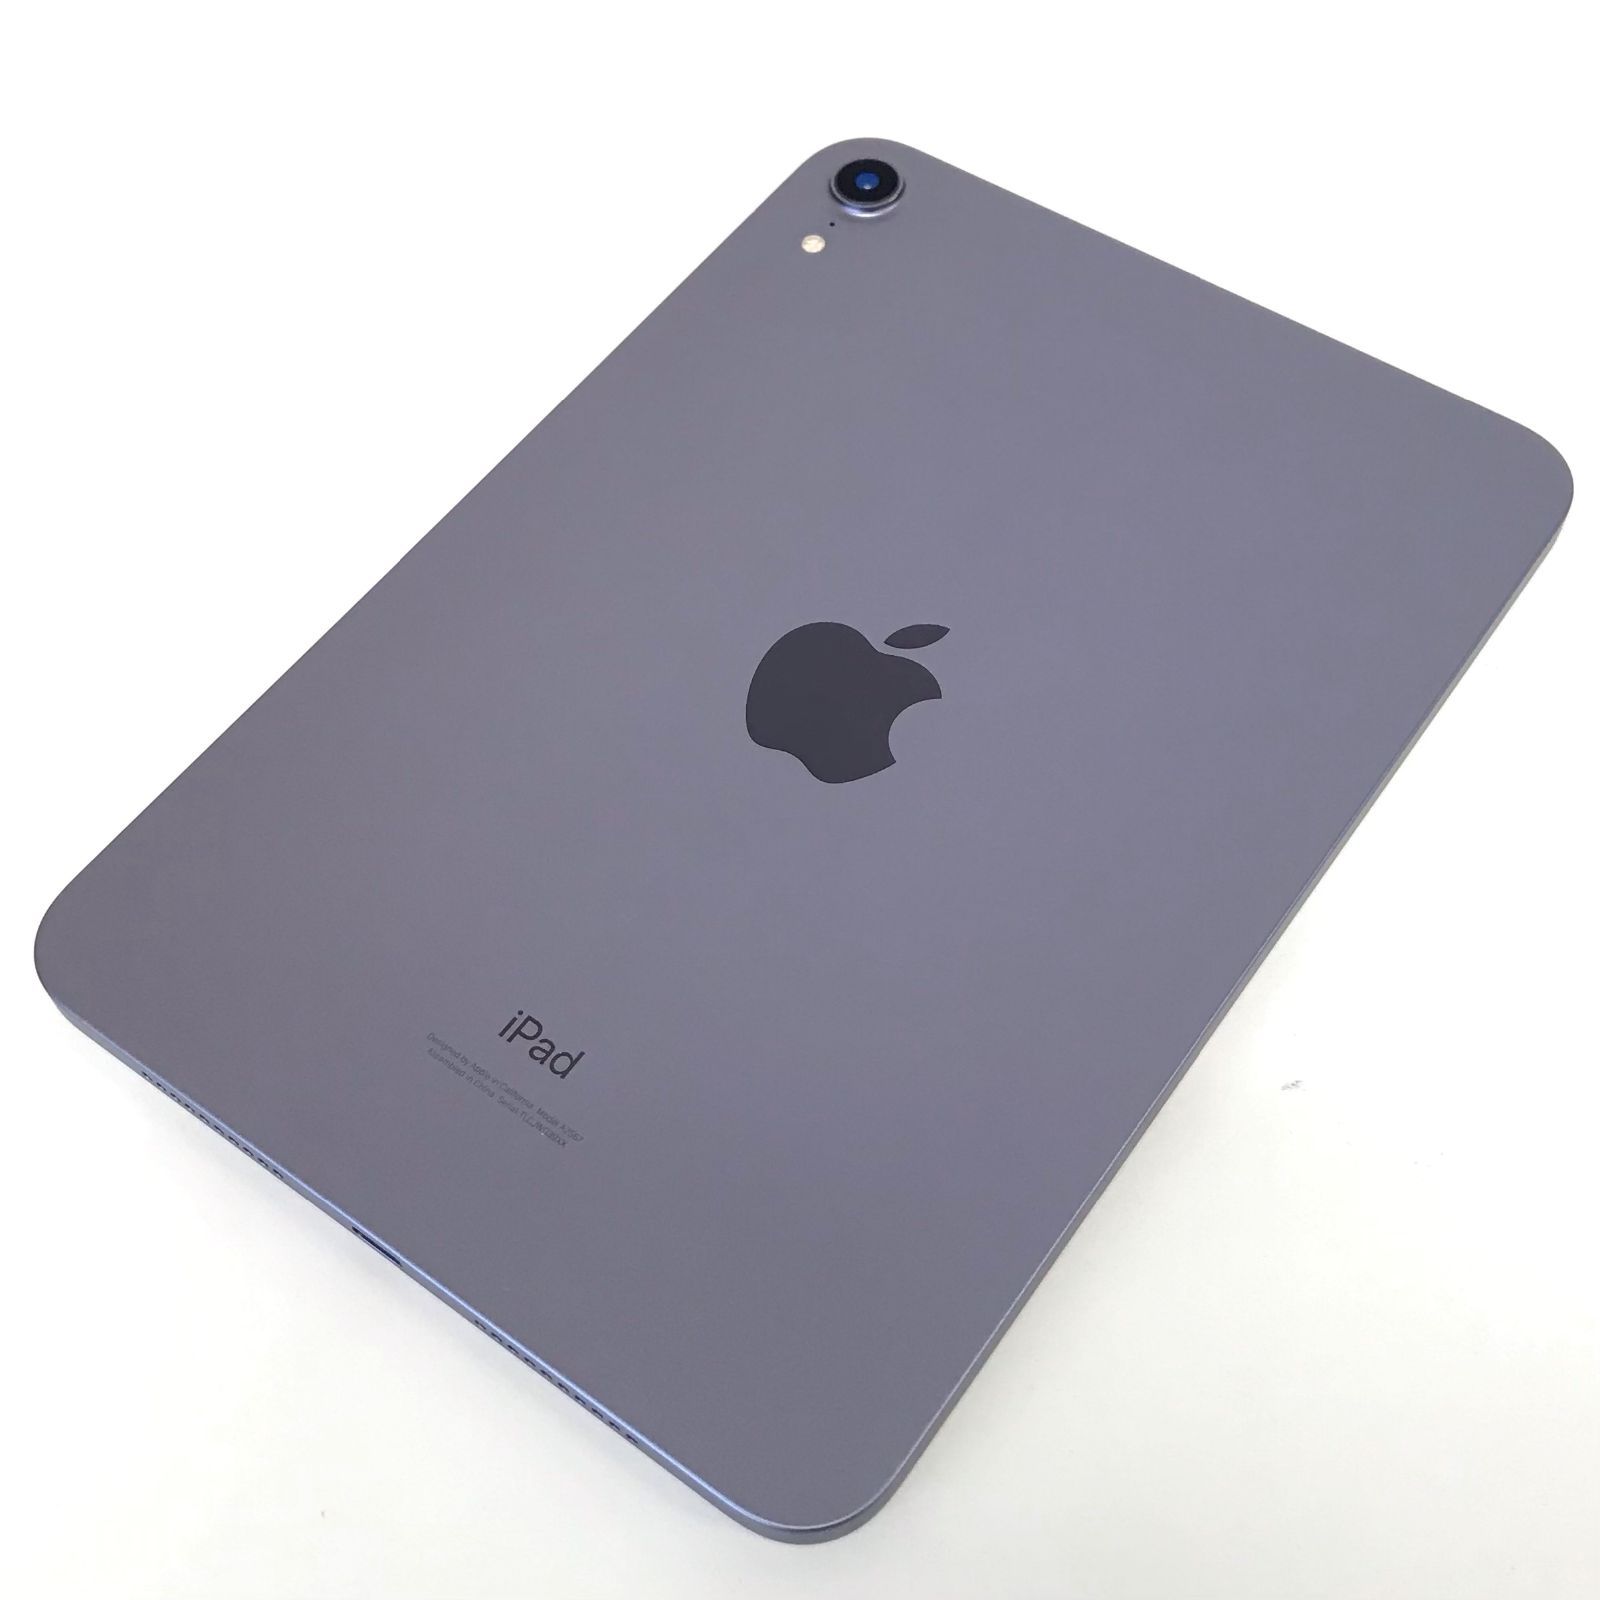 θ iPadmini(第6世代)Wi-Fi 256GB パープル MK7X3JA - メルカリ